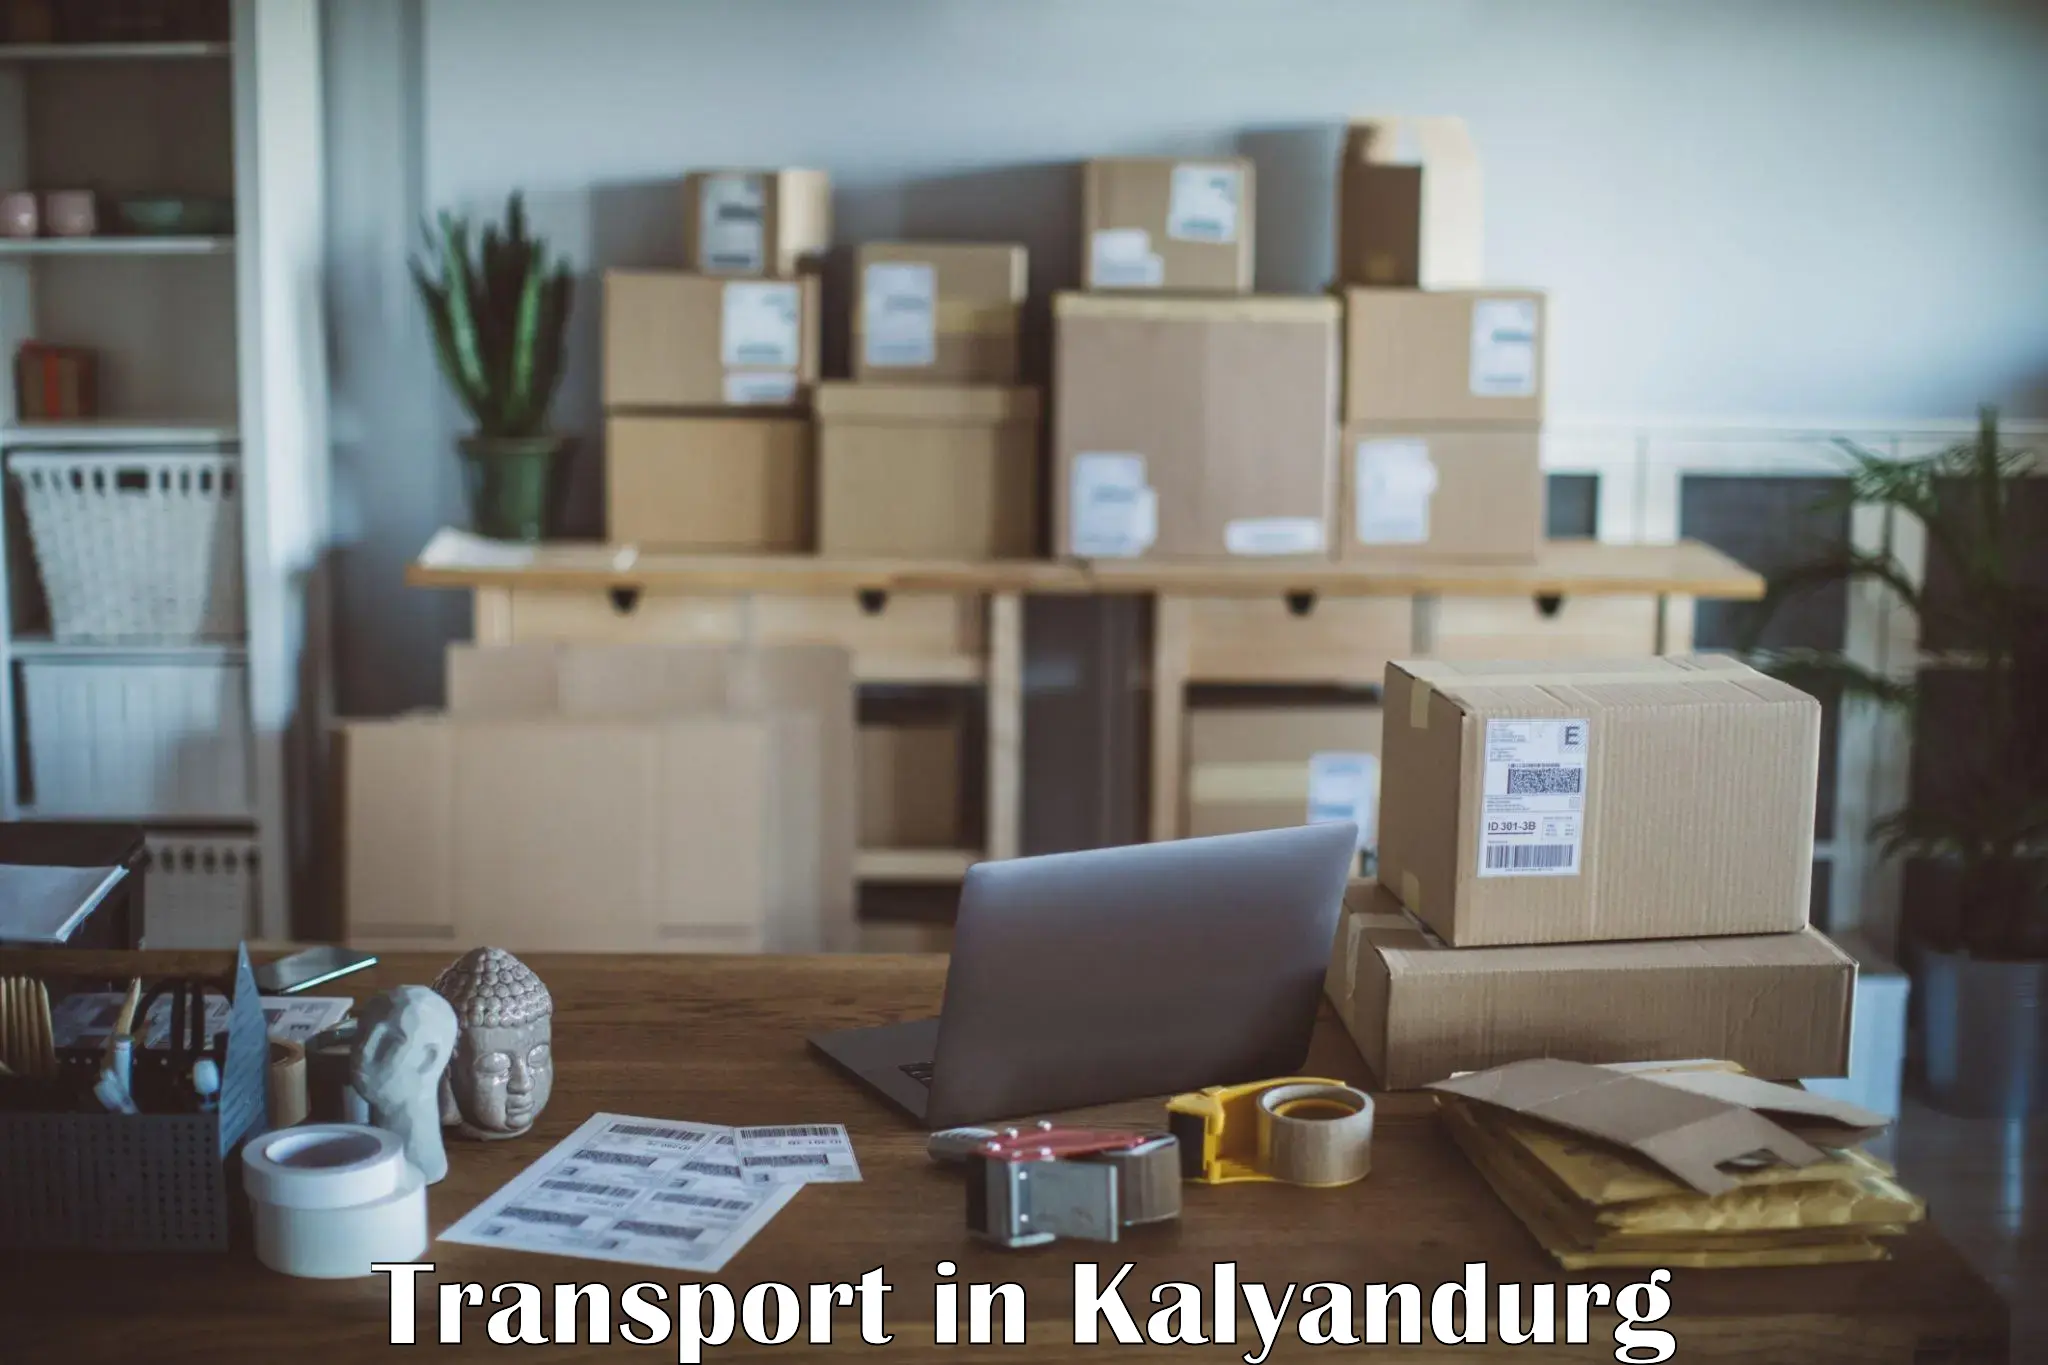 Road transport online services in Kalyandurg